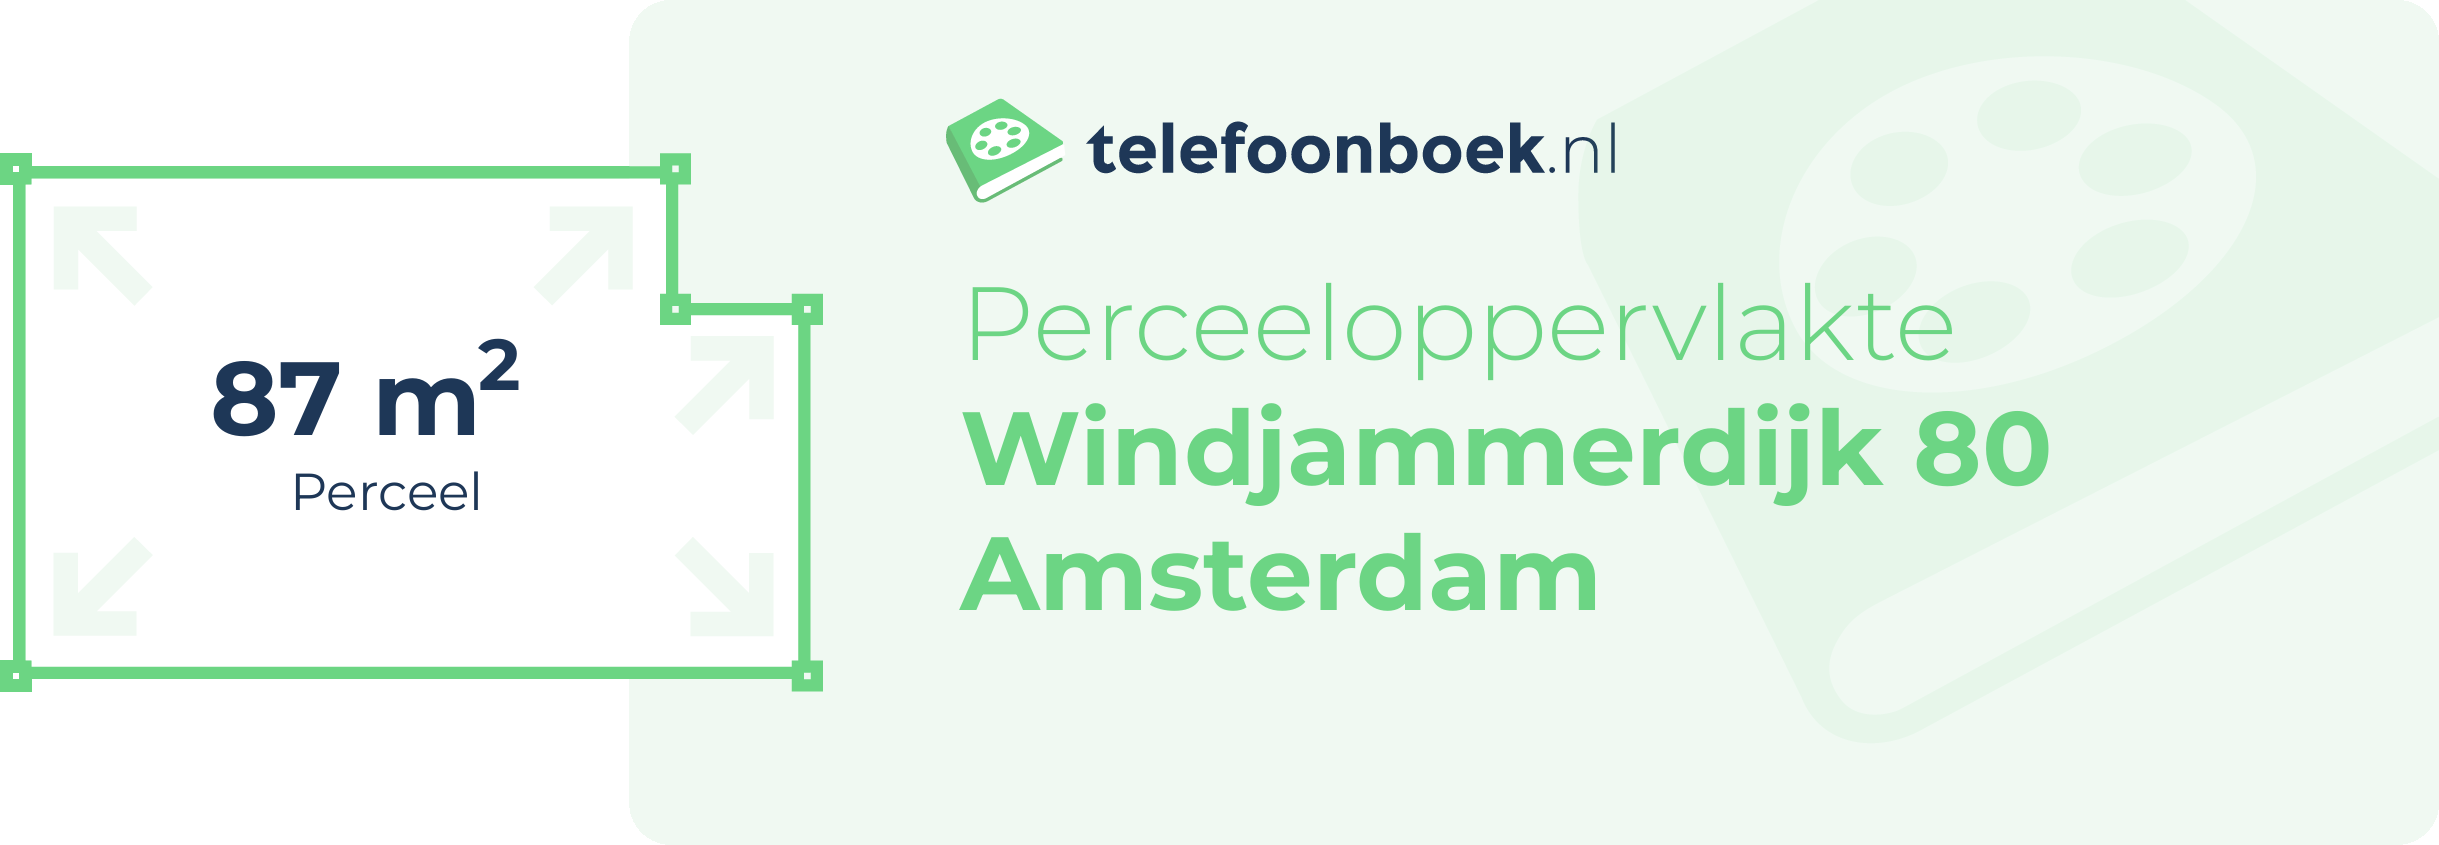 Perceeloppervlakte Windjammerdijk 80 Amsterdam